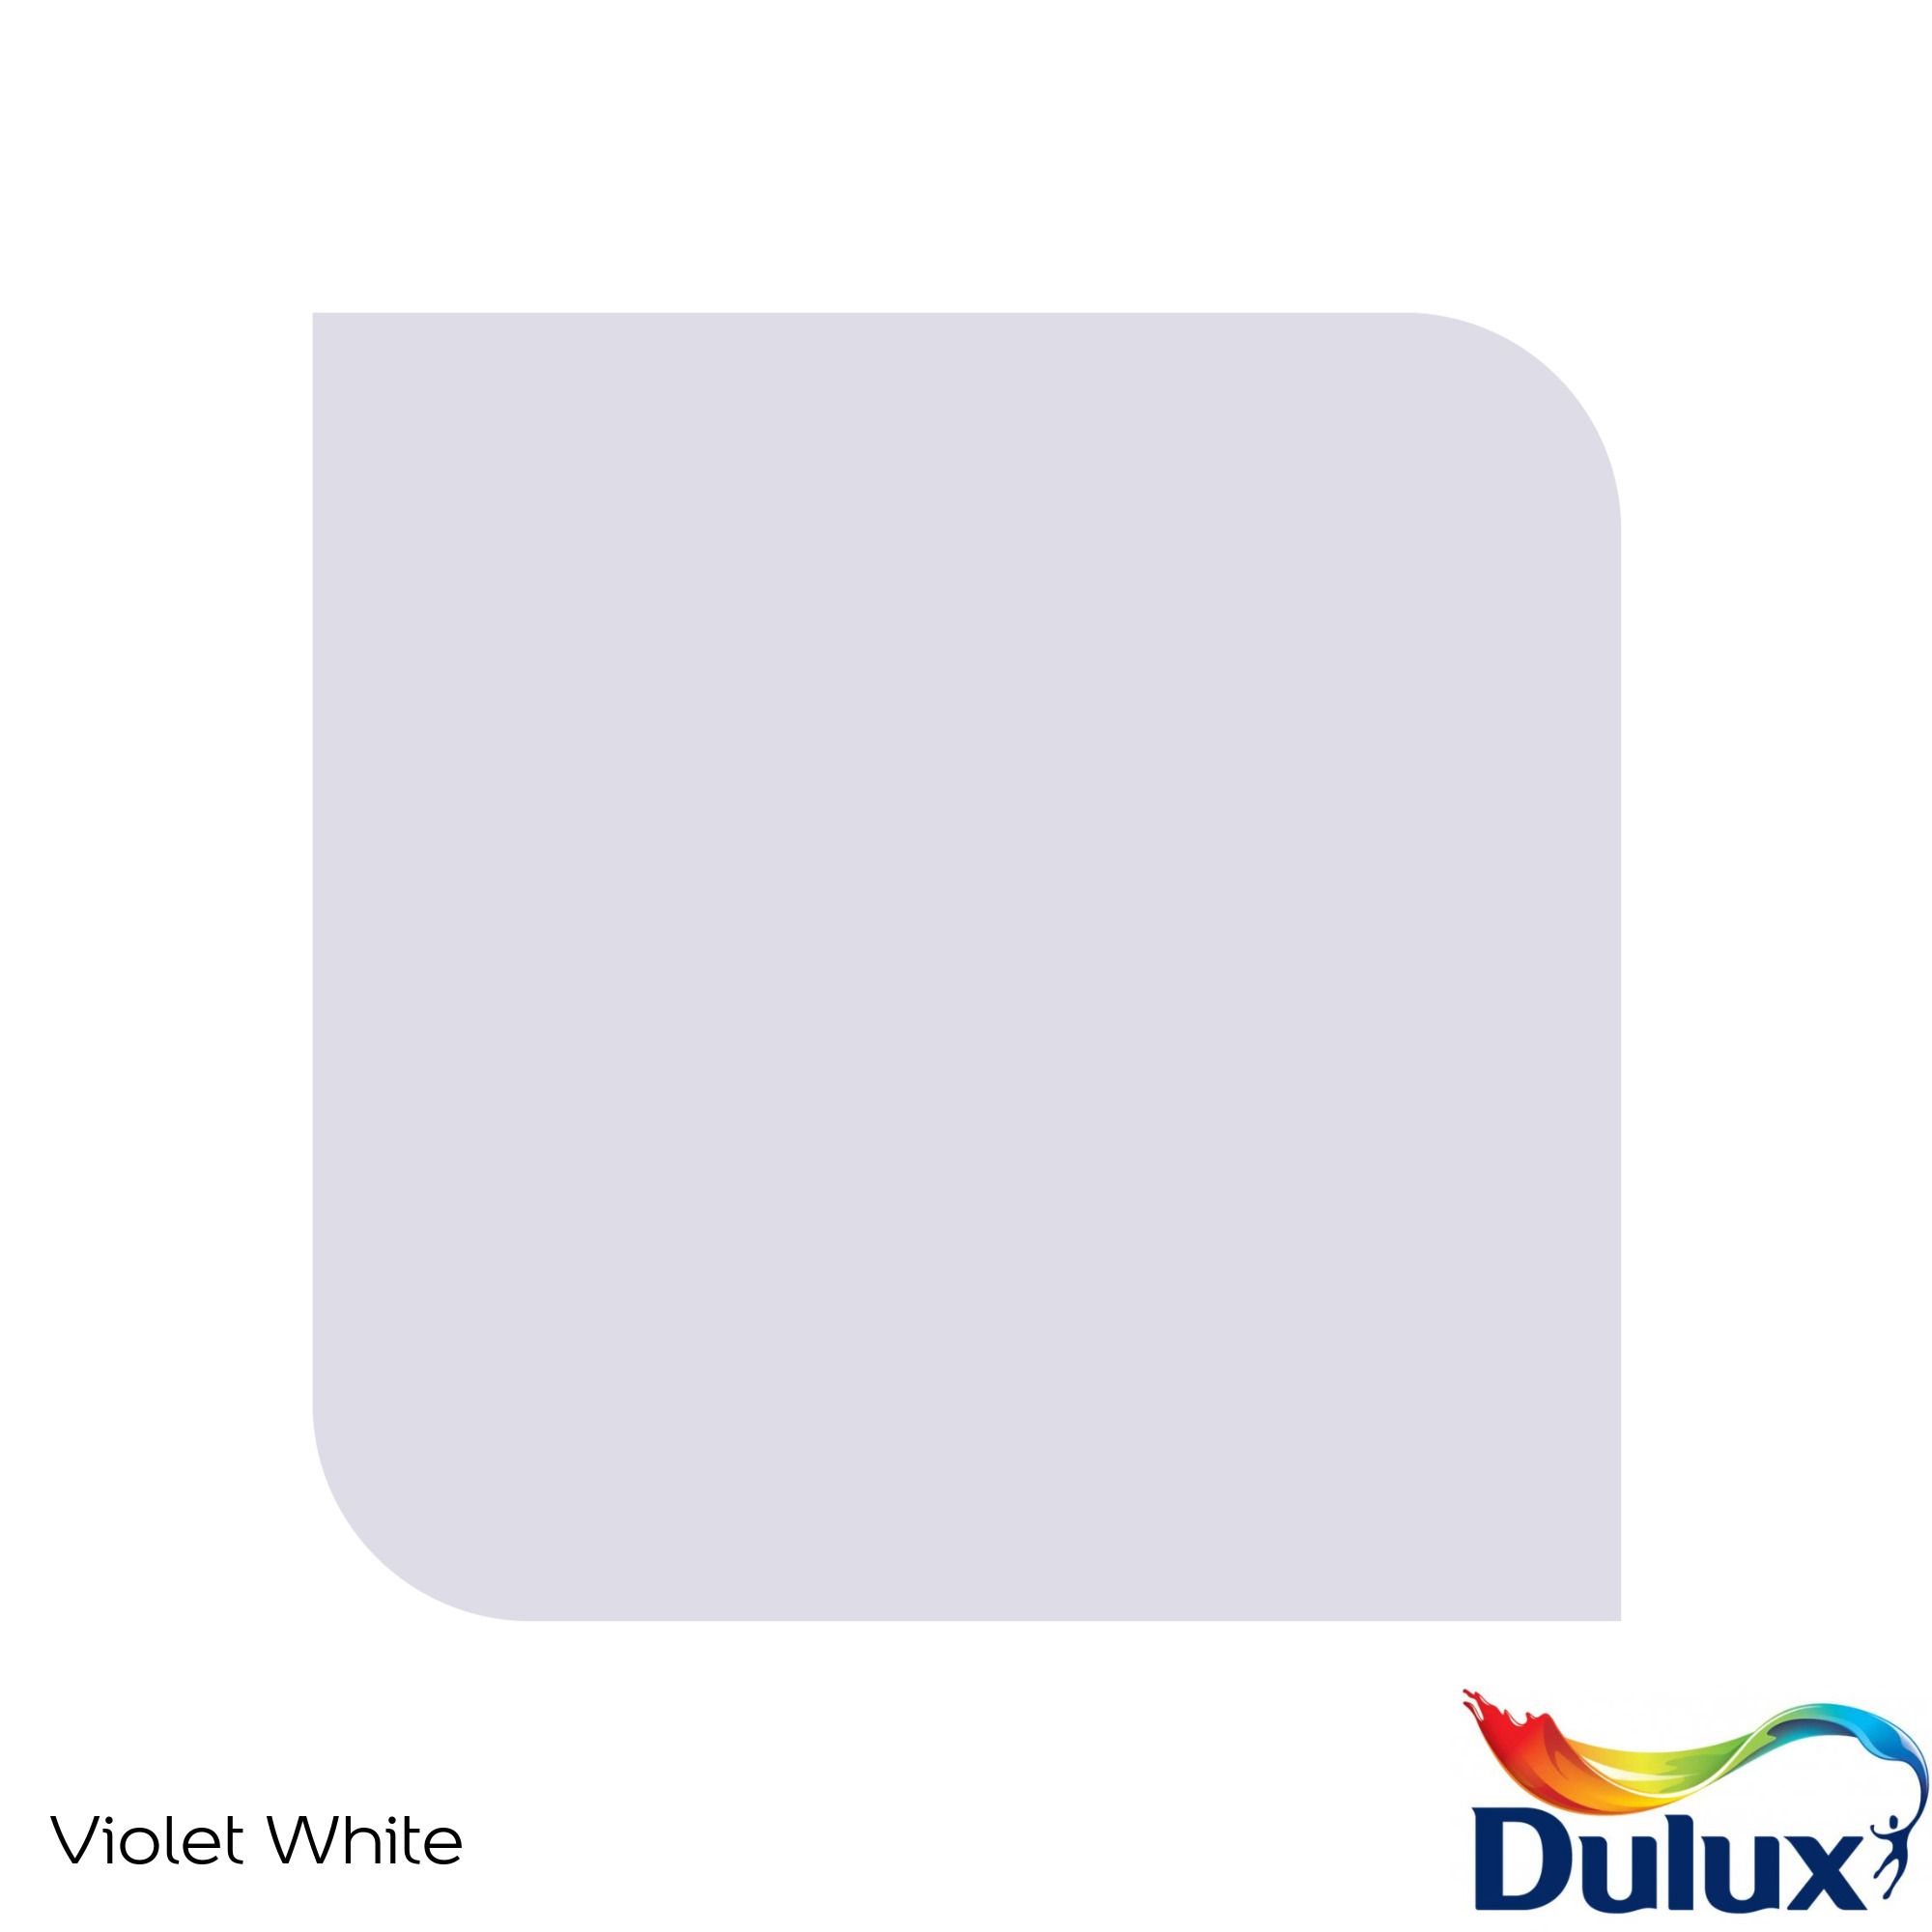 Dulux Easycare Violet white Matt Emulsion paint, 30ml Tester pot